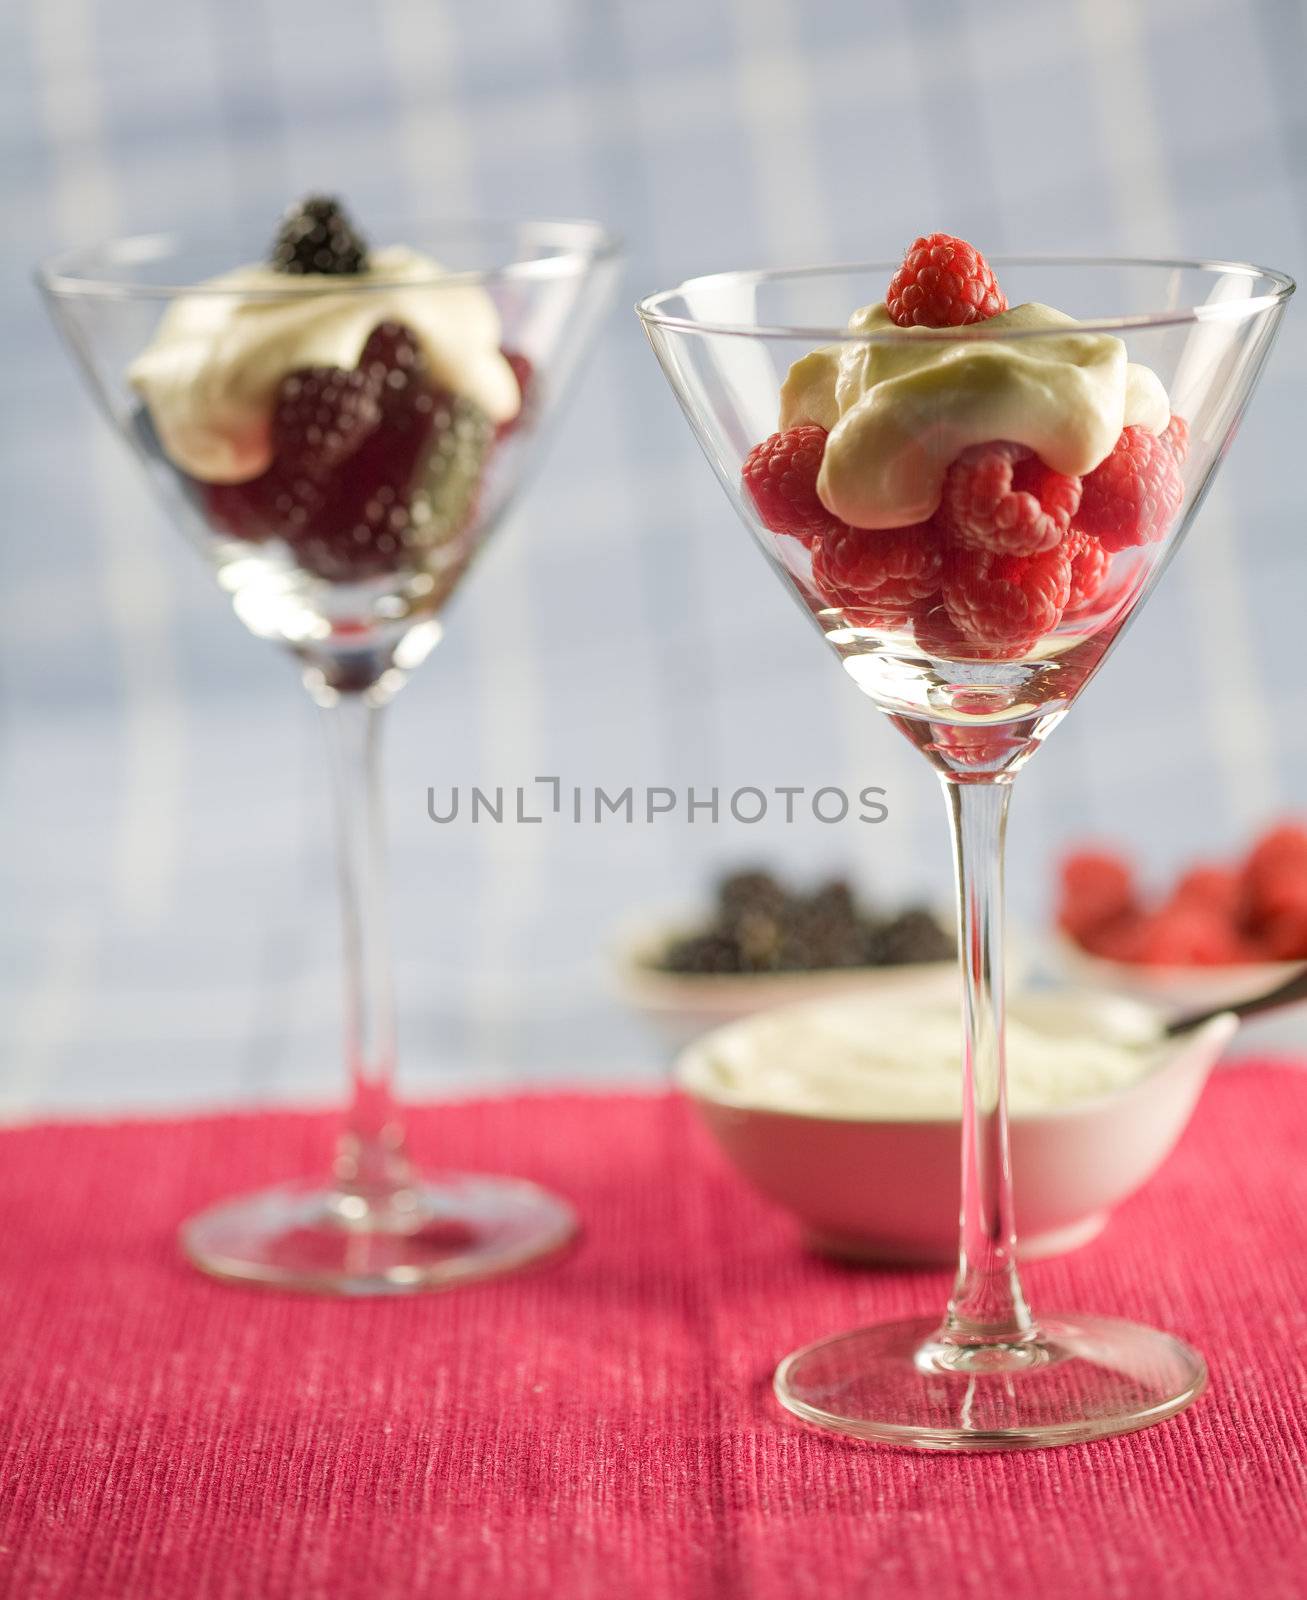 Delicious dessert by Fotosmurf